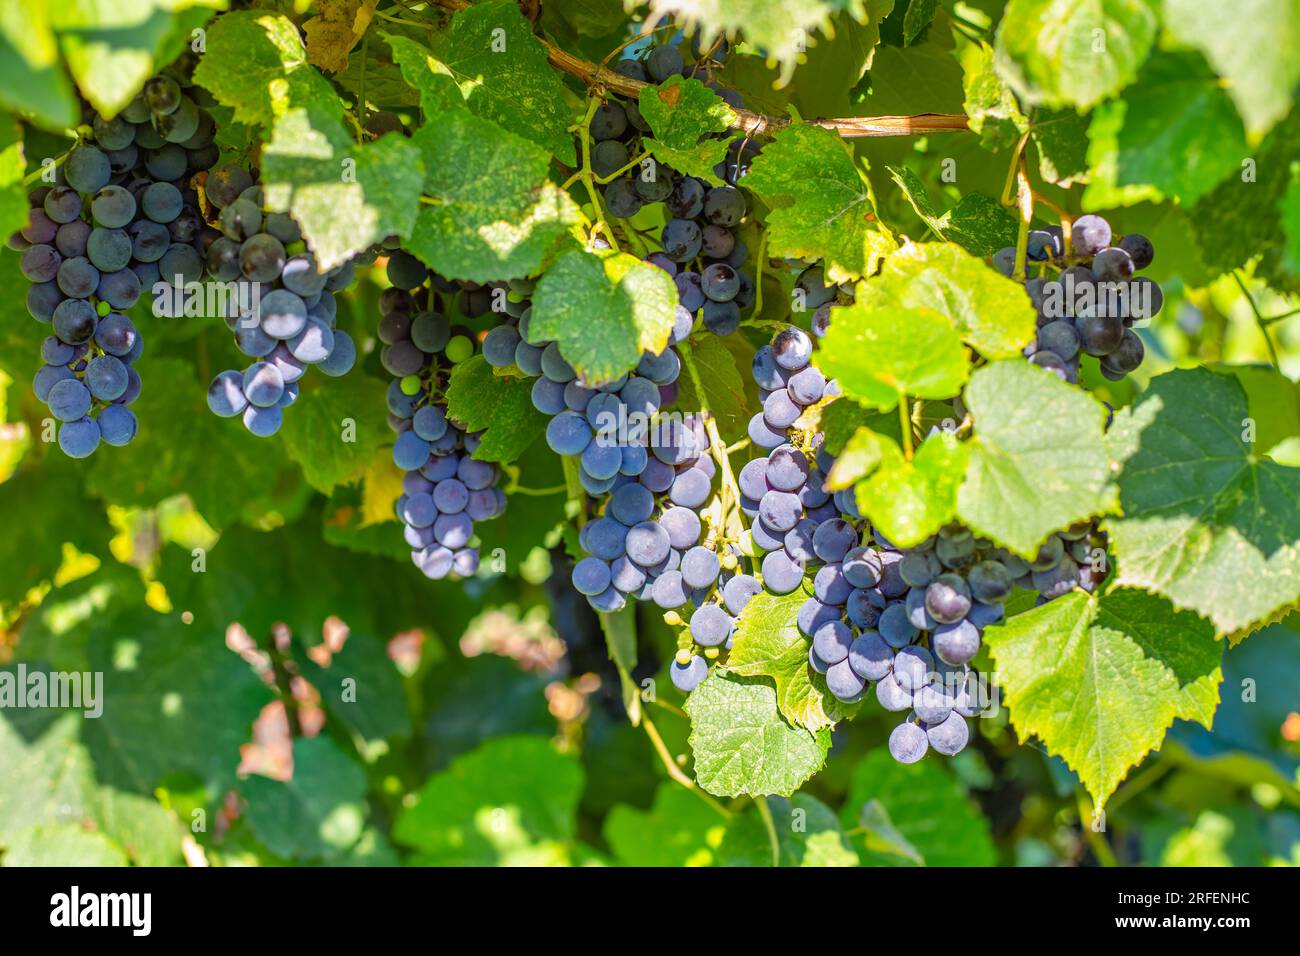 Grappoli di uva nera pendono dalla vite in una giornata di sole. Raccogliere l'uva in giardino. Foto Stock